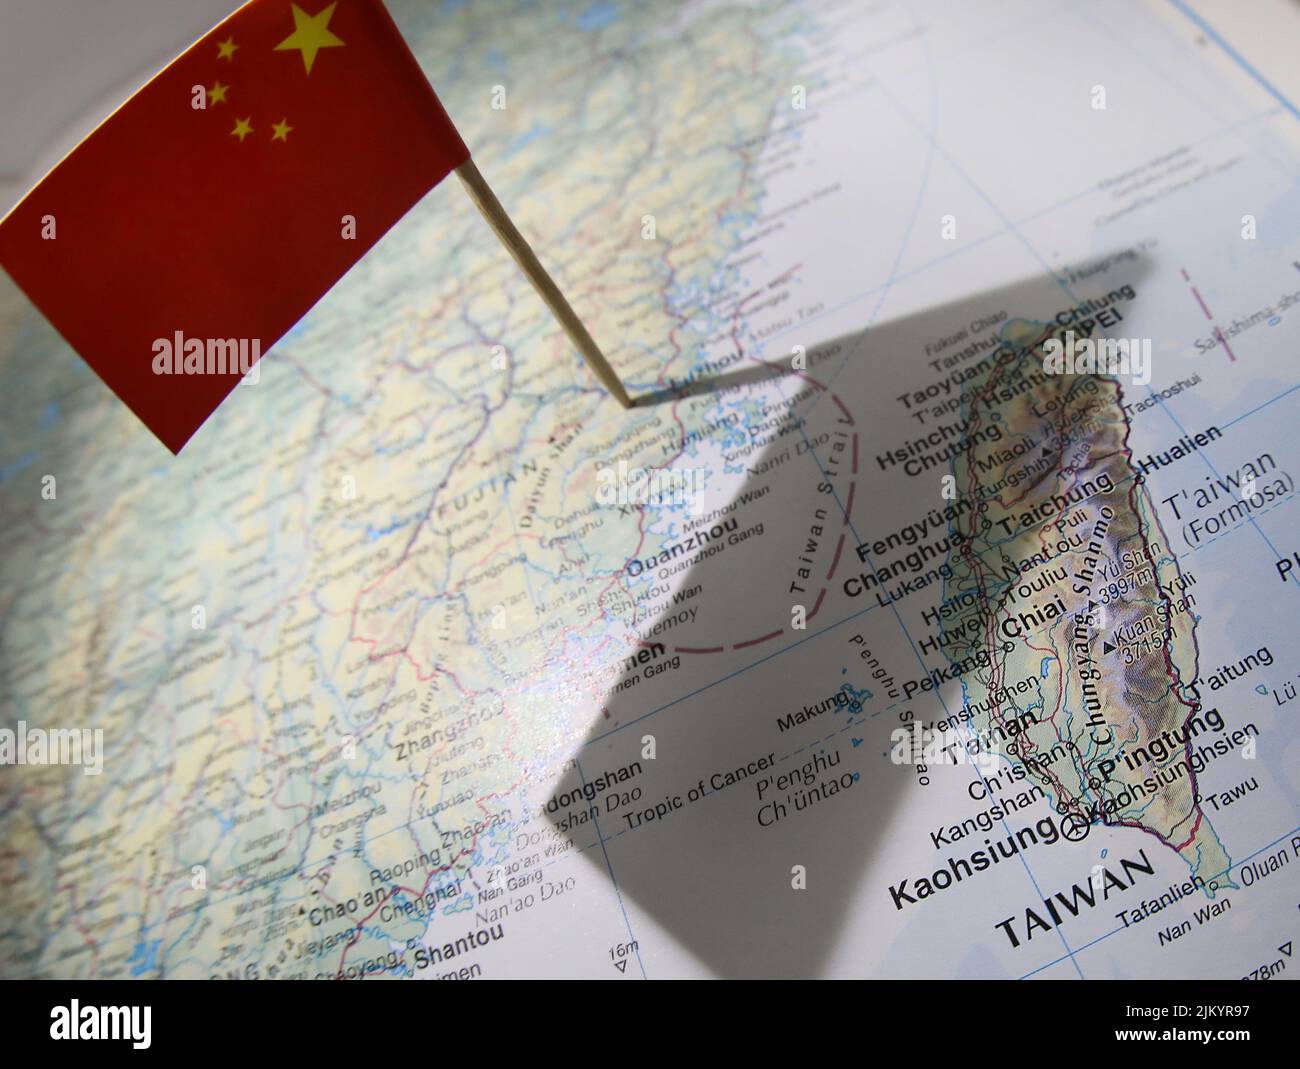 Un grafico di stile editoriale che mostra la bandiera cinese su una mappa che getta un'ombra dal suo territorio su Taiwan e sullo stretto taiwanese contestato. Foto Stock